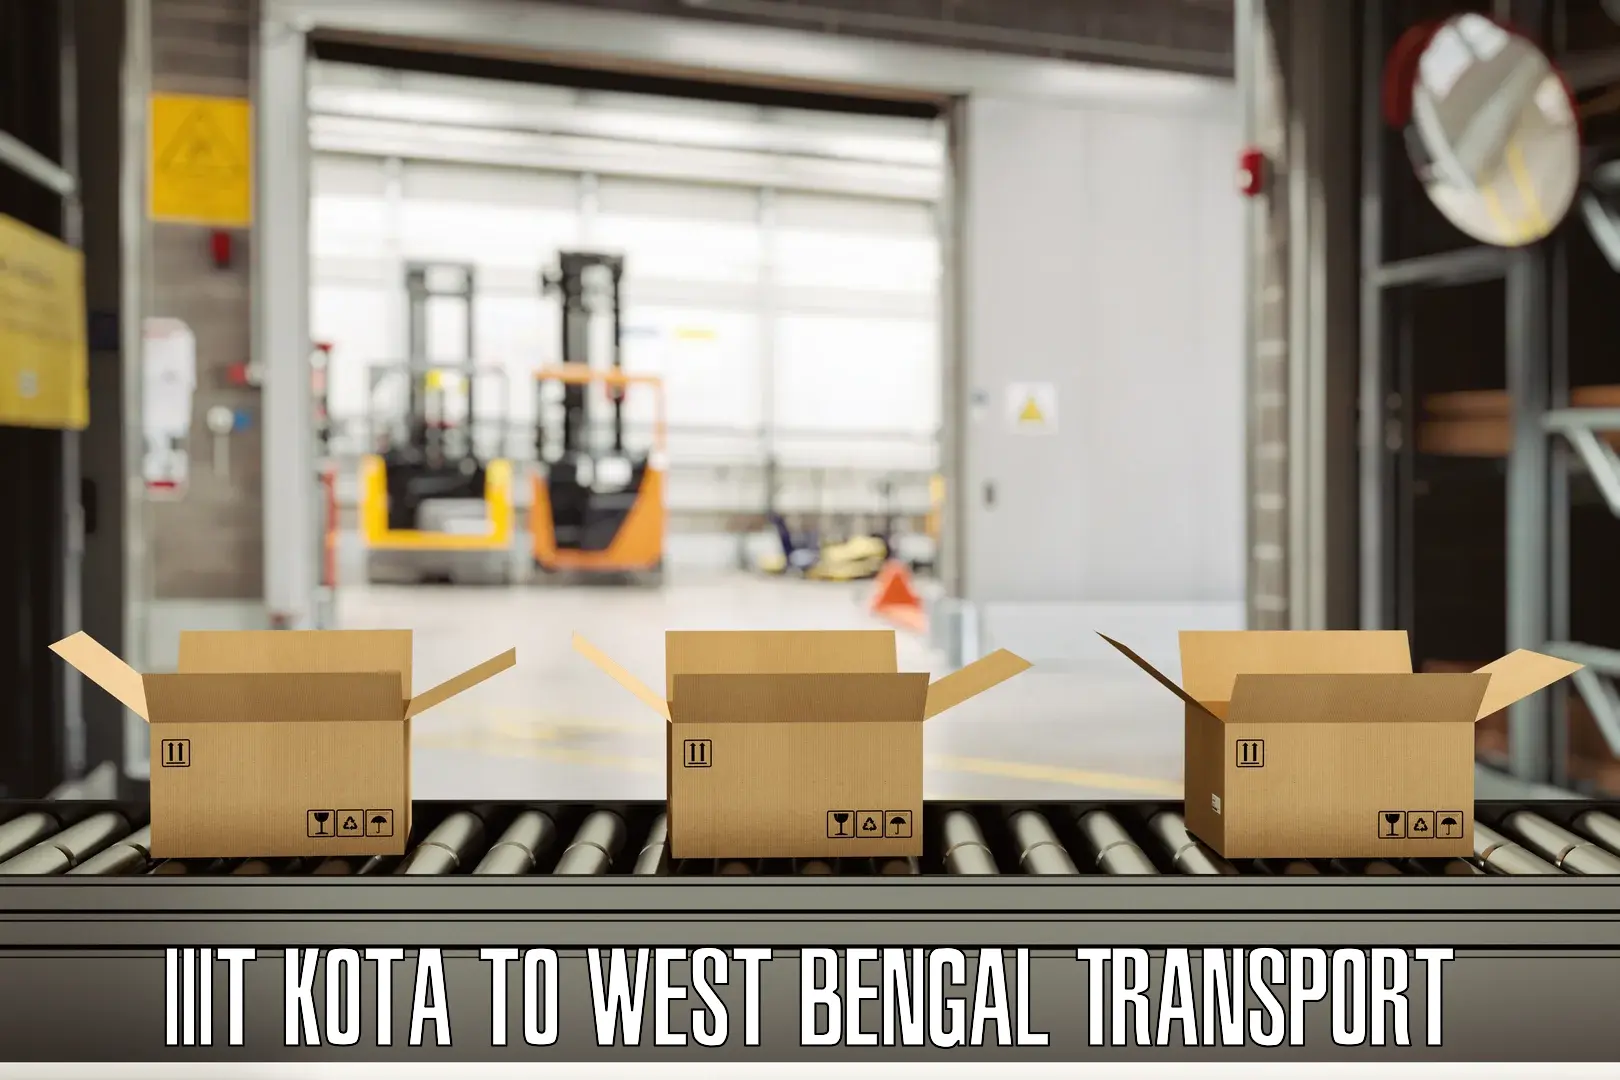 Lorry transport service IIIT Kota to Farakka